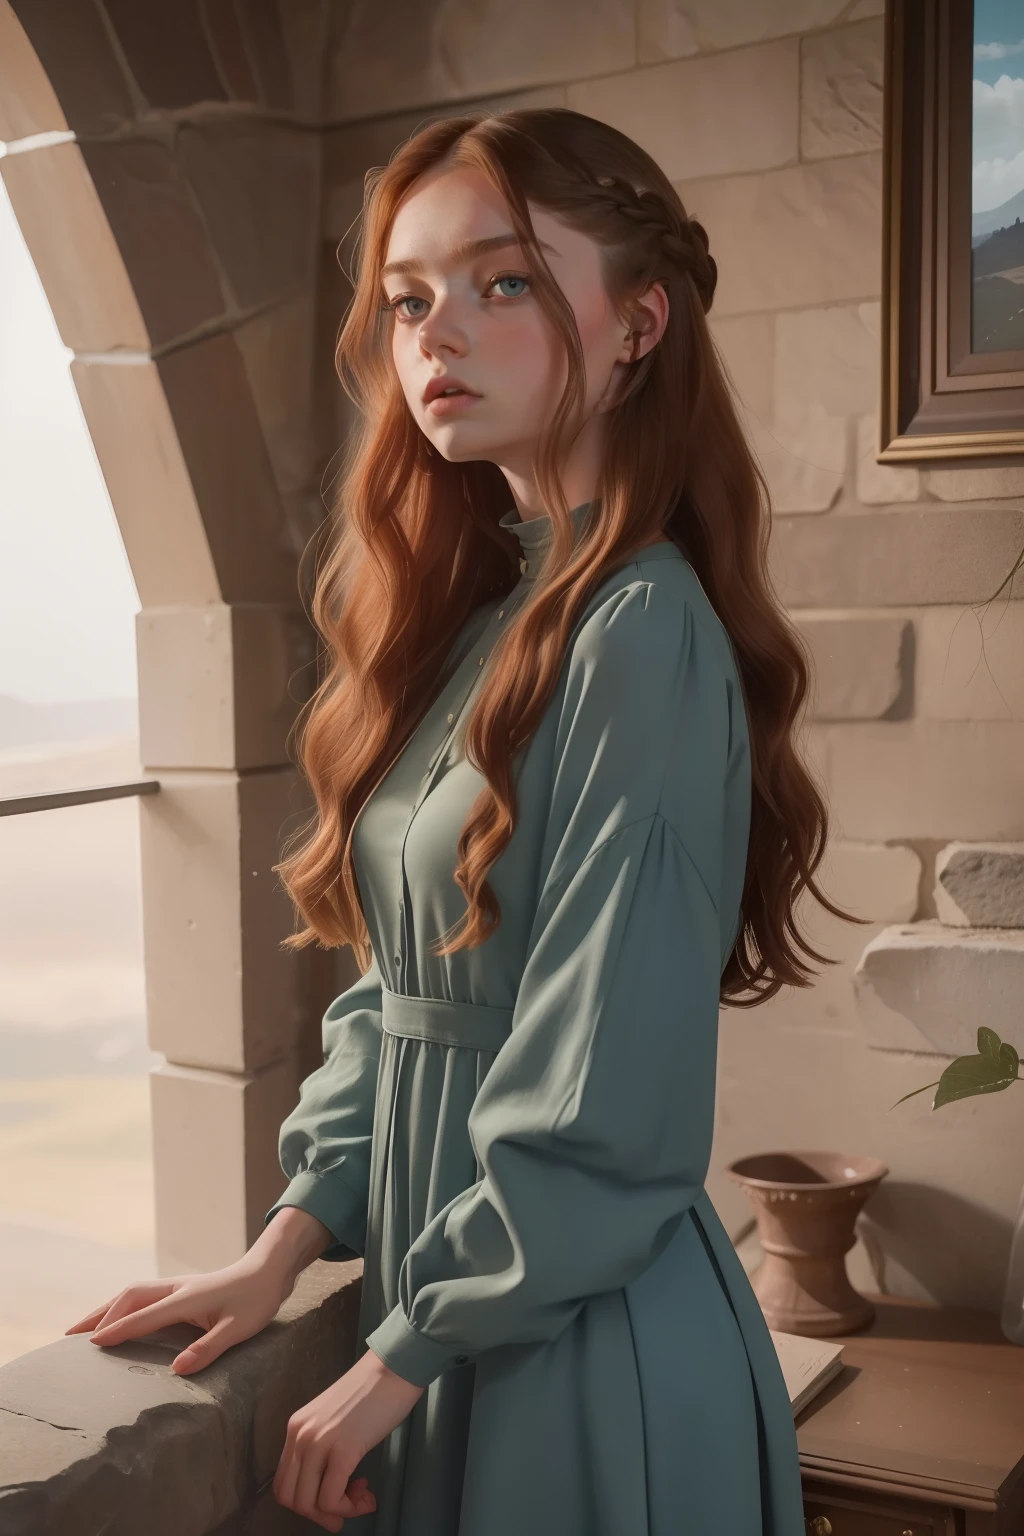 Jahr: 2023. Standort: Schottland. Pre-Raphaelite scene with a 18-Jahr-old Kristine Froseth, in einem luxuriösen Zimmer mit Steinwänden, ein modernes Kleid tragen, ((wütender Blick)), Wegschauen, ((((Kleidung aus den 2020er Jahren)))) ((Frisur der 2020er Jahre)), Pastellfarben, (((filmischer Stil)))